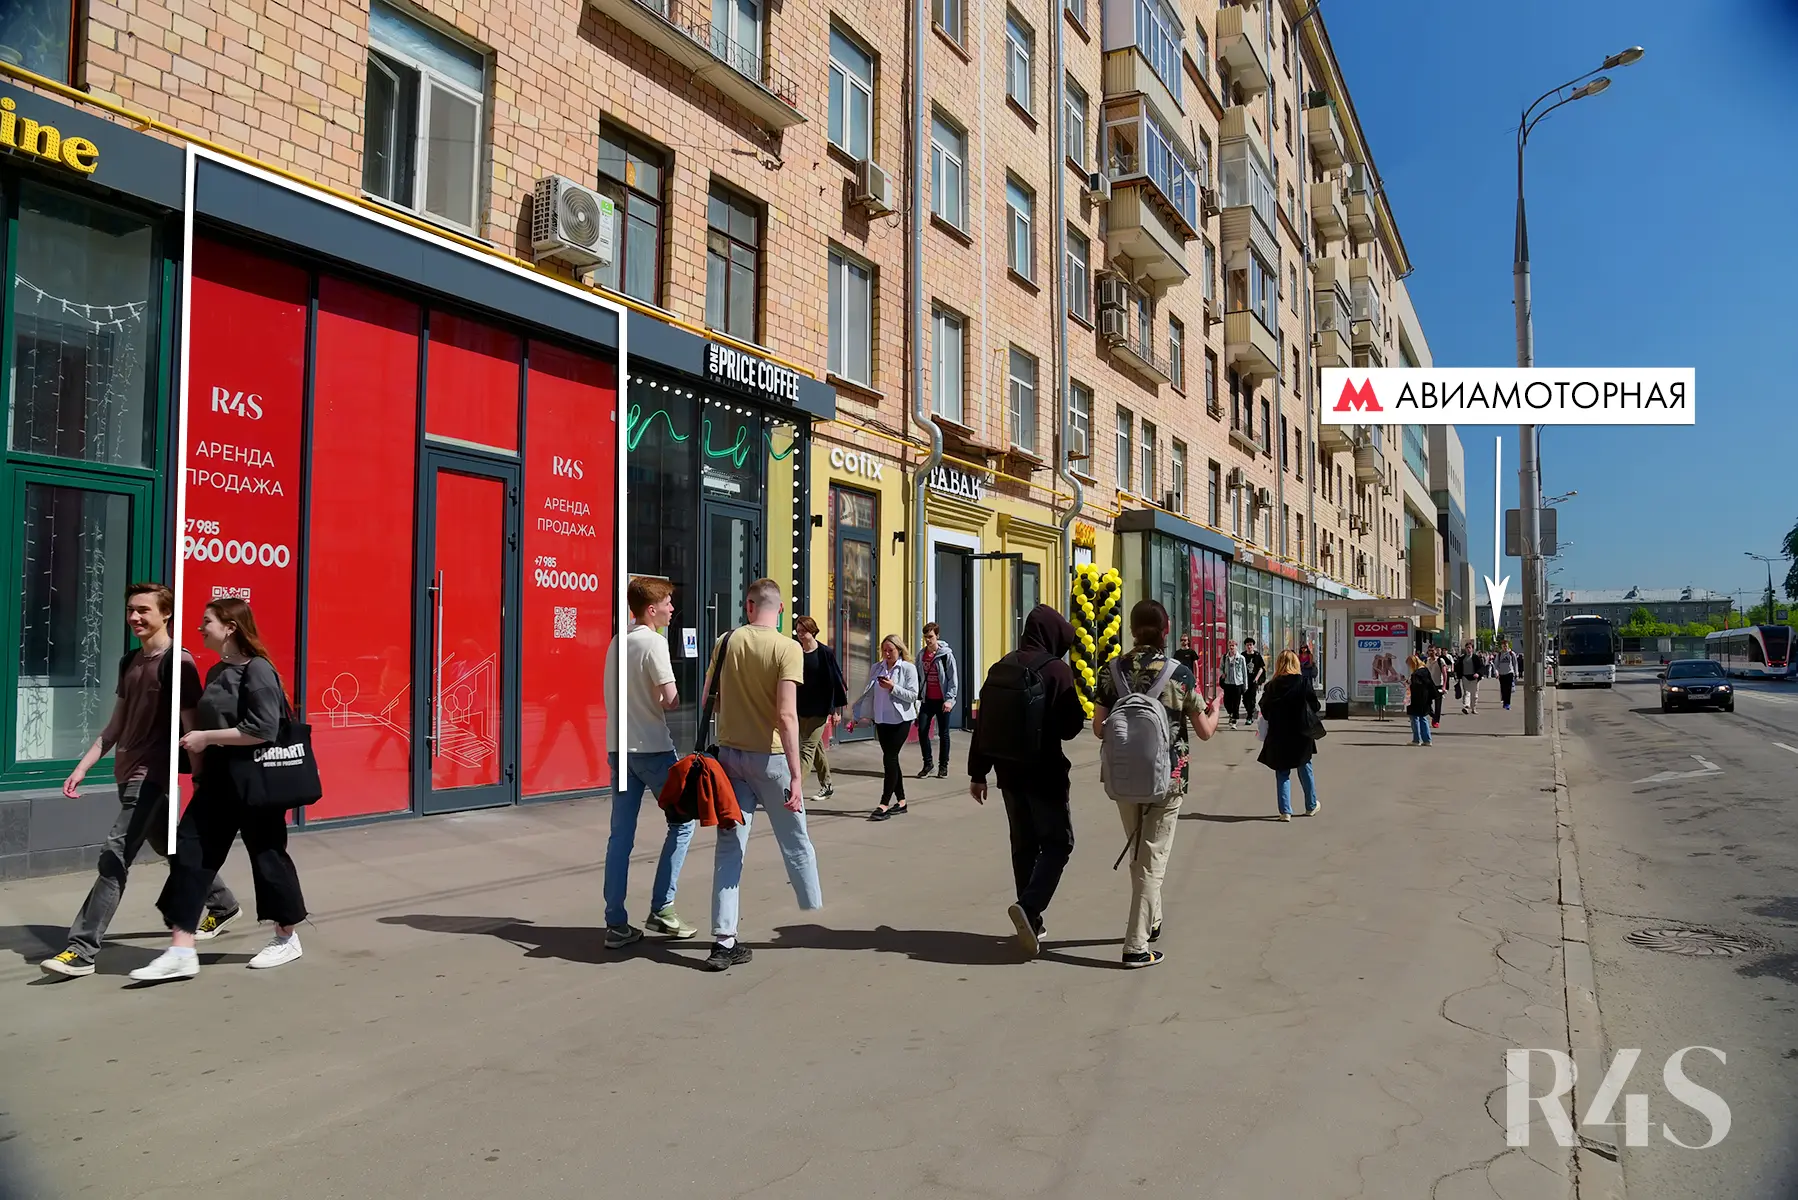 Продажа торгового помещения площадью 153.4 м2 в Москве: Красноказарменная, 23 R4S | Realty4Sale